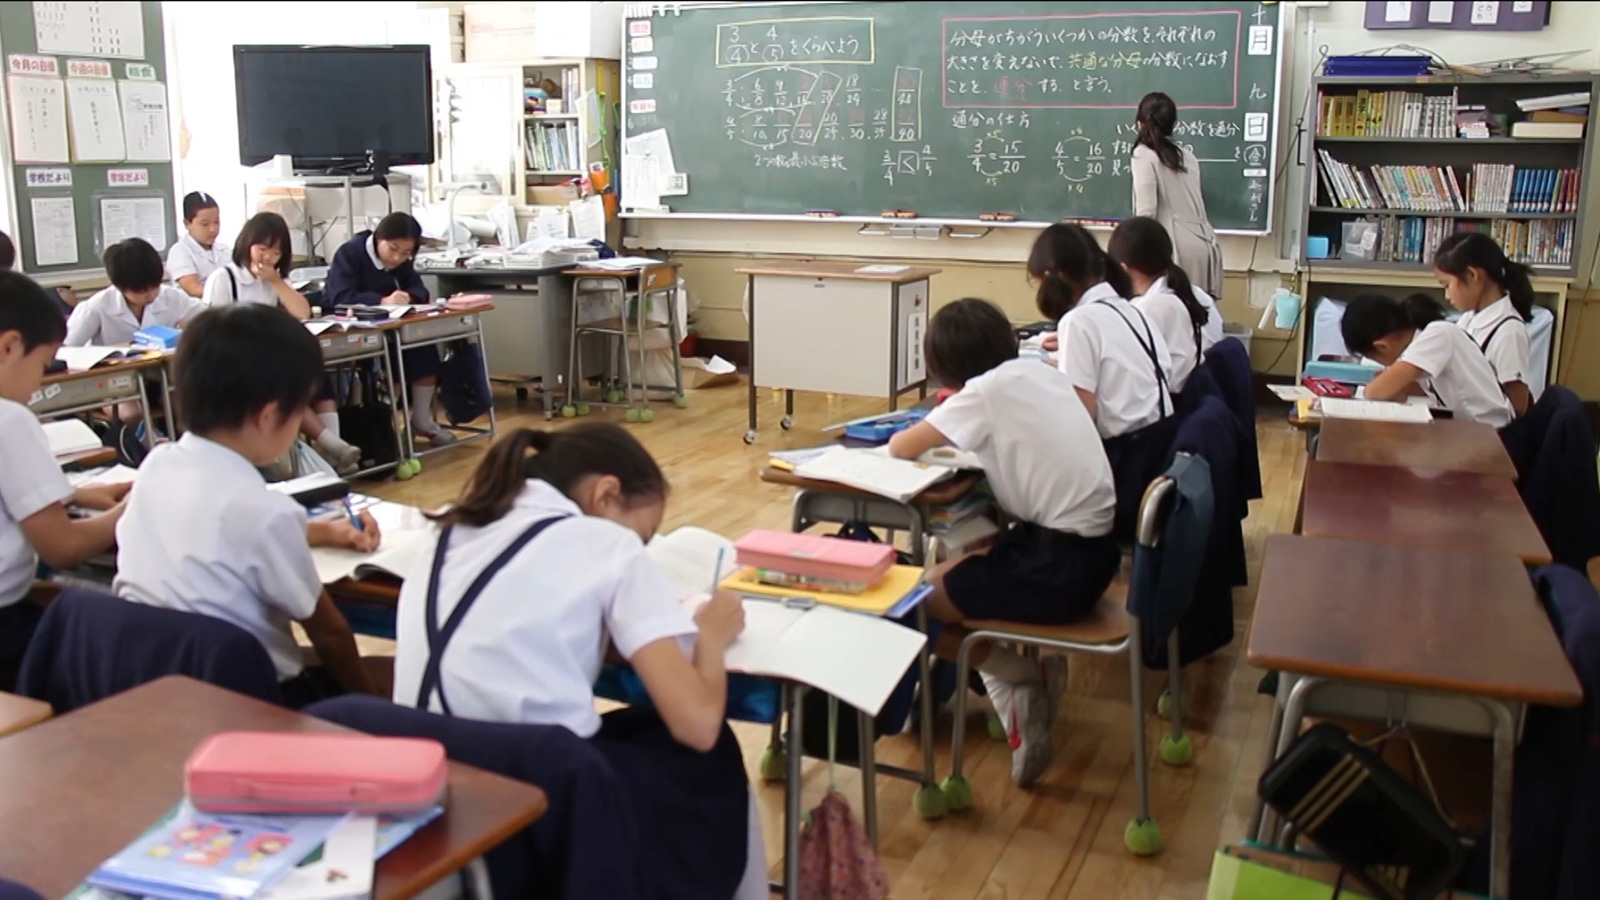 صورة اليابان تطلق مباراة الحصول على المنح الدراسية لفائدة الطلبة المغاربة